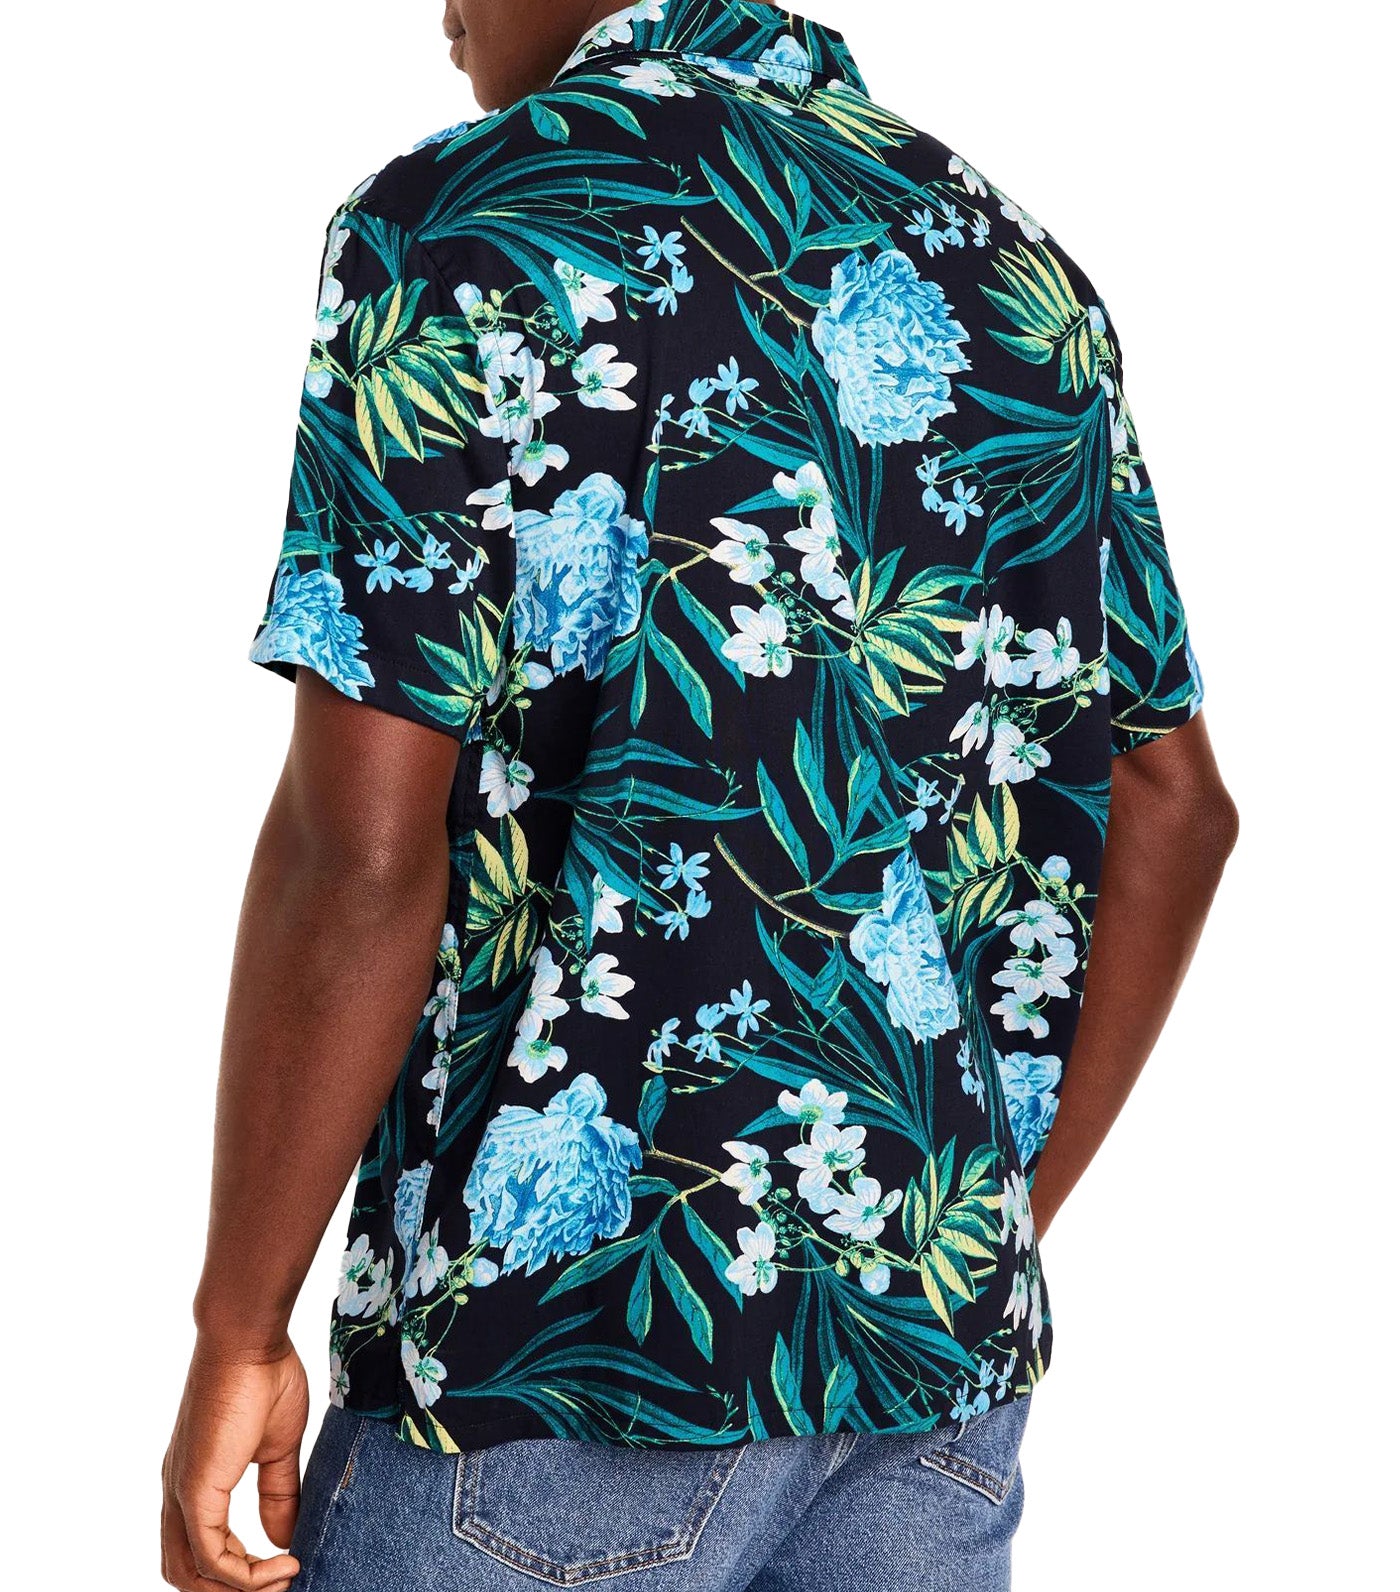 Short-Sleeve Printed Camp Shirt for Men Blue Floral